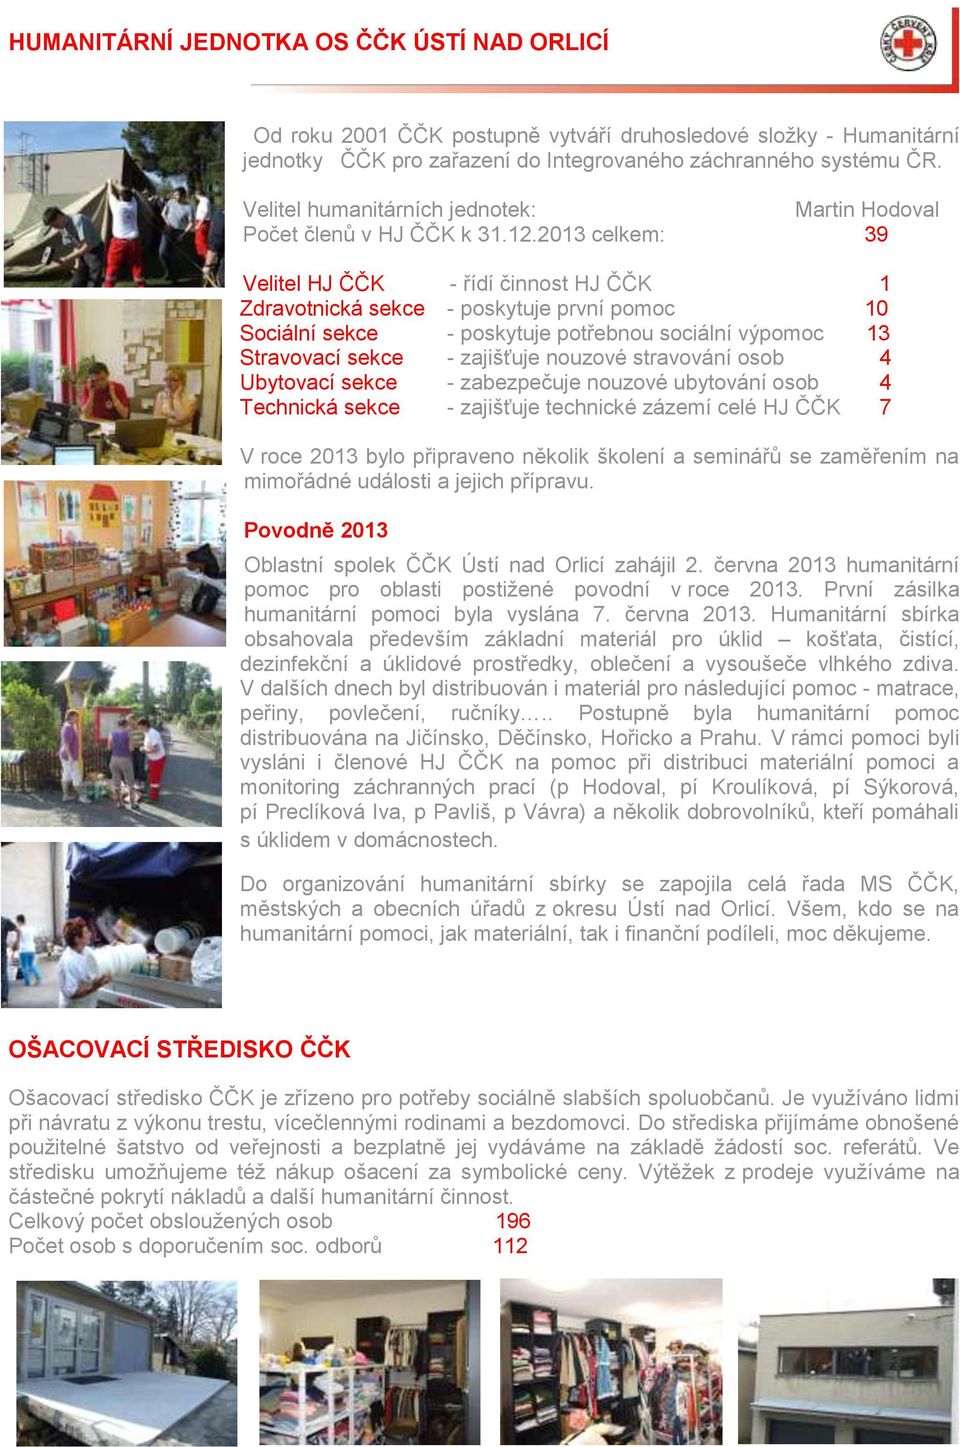 2013 celkem: 39 Velitel HJ ČČK - řídí činnost HJ ČČK 1 Zdravotnická sekce - poskytuje první pomoc 10 Sociální sekce - poskytuje potřebnou sociální výpomoc 13 Stravovací sekce - zajišťuje nouzové